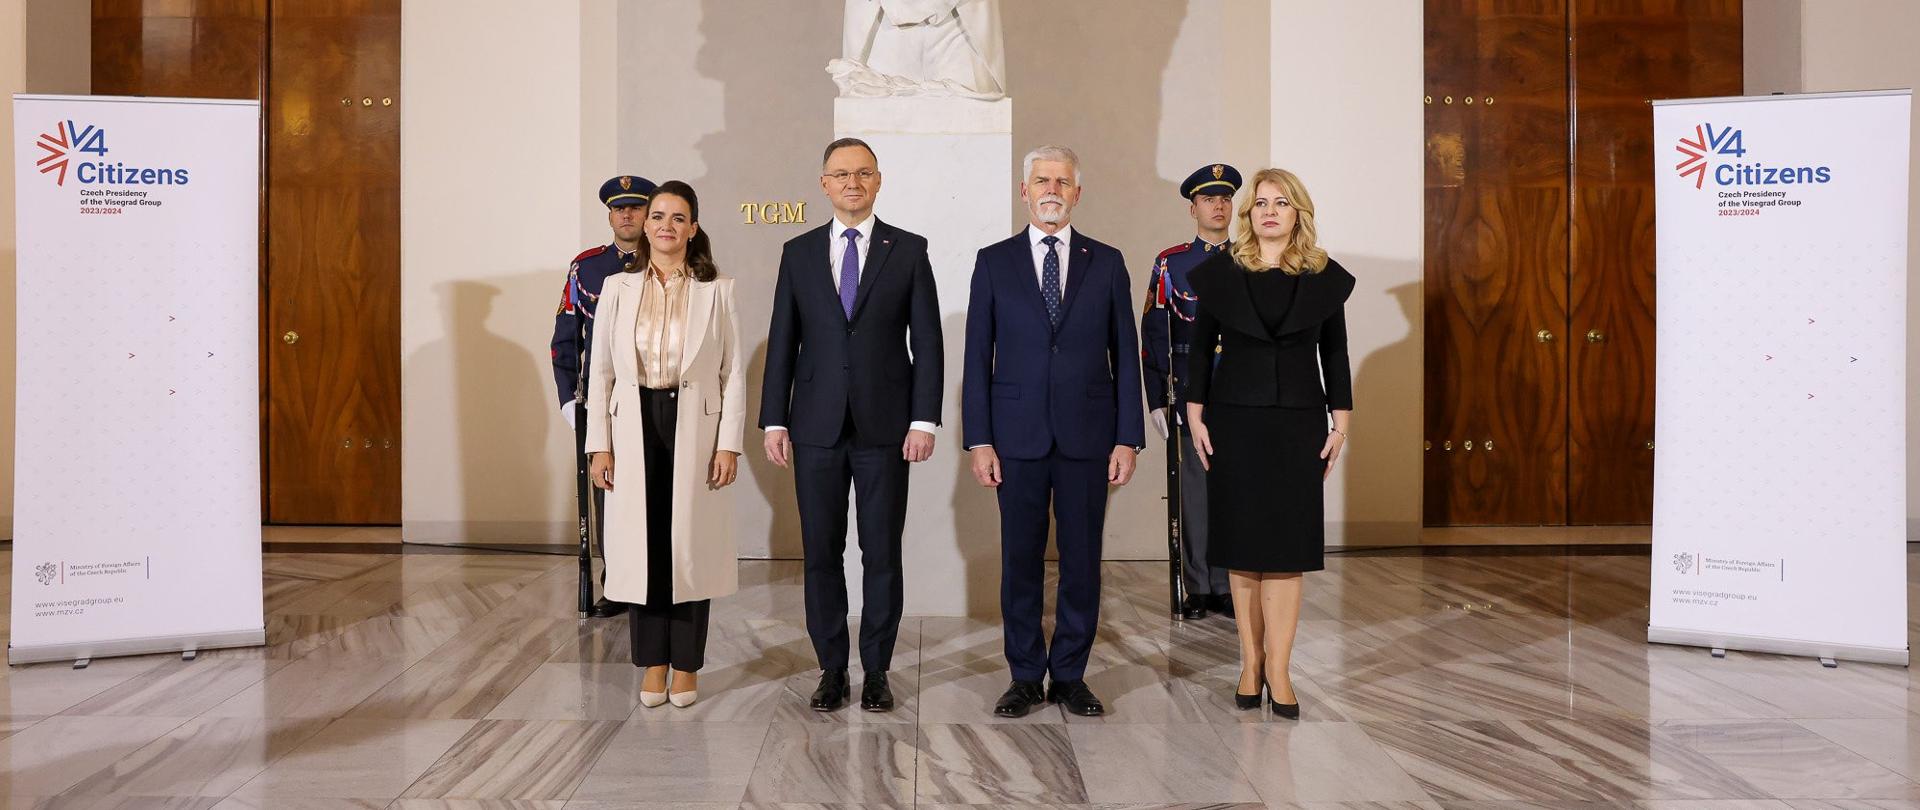 Summit prezidentů zemí Visegrádské skupiny v Praze